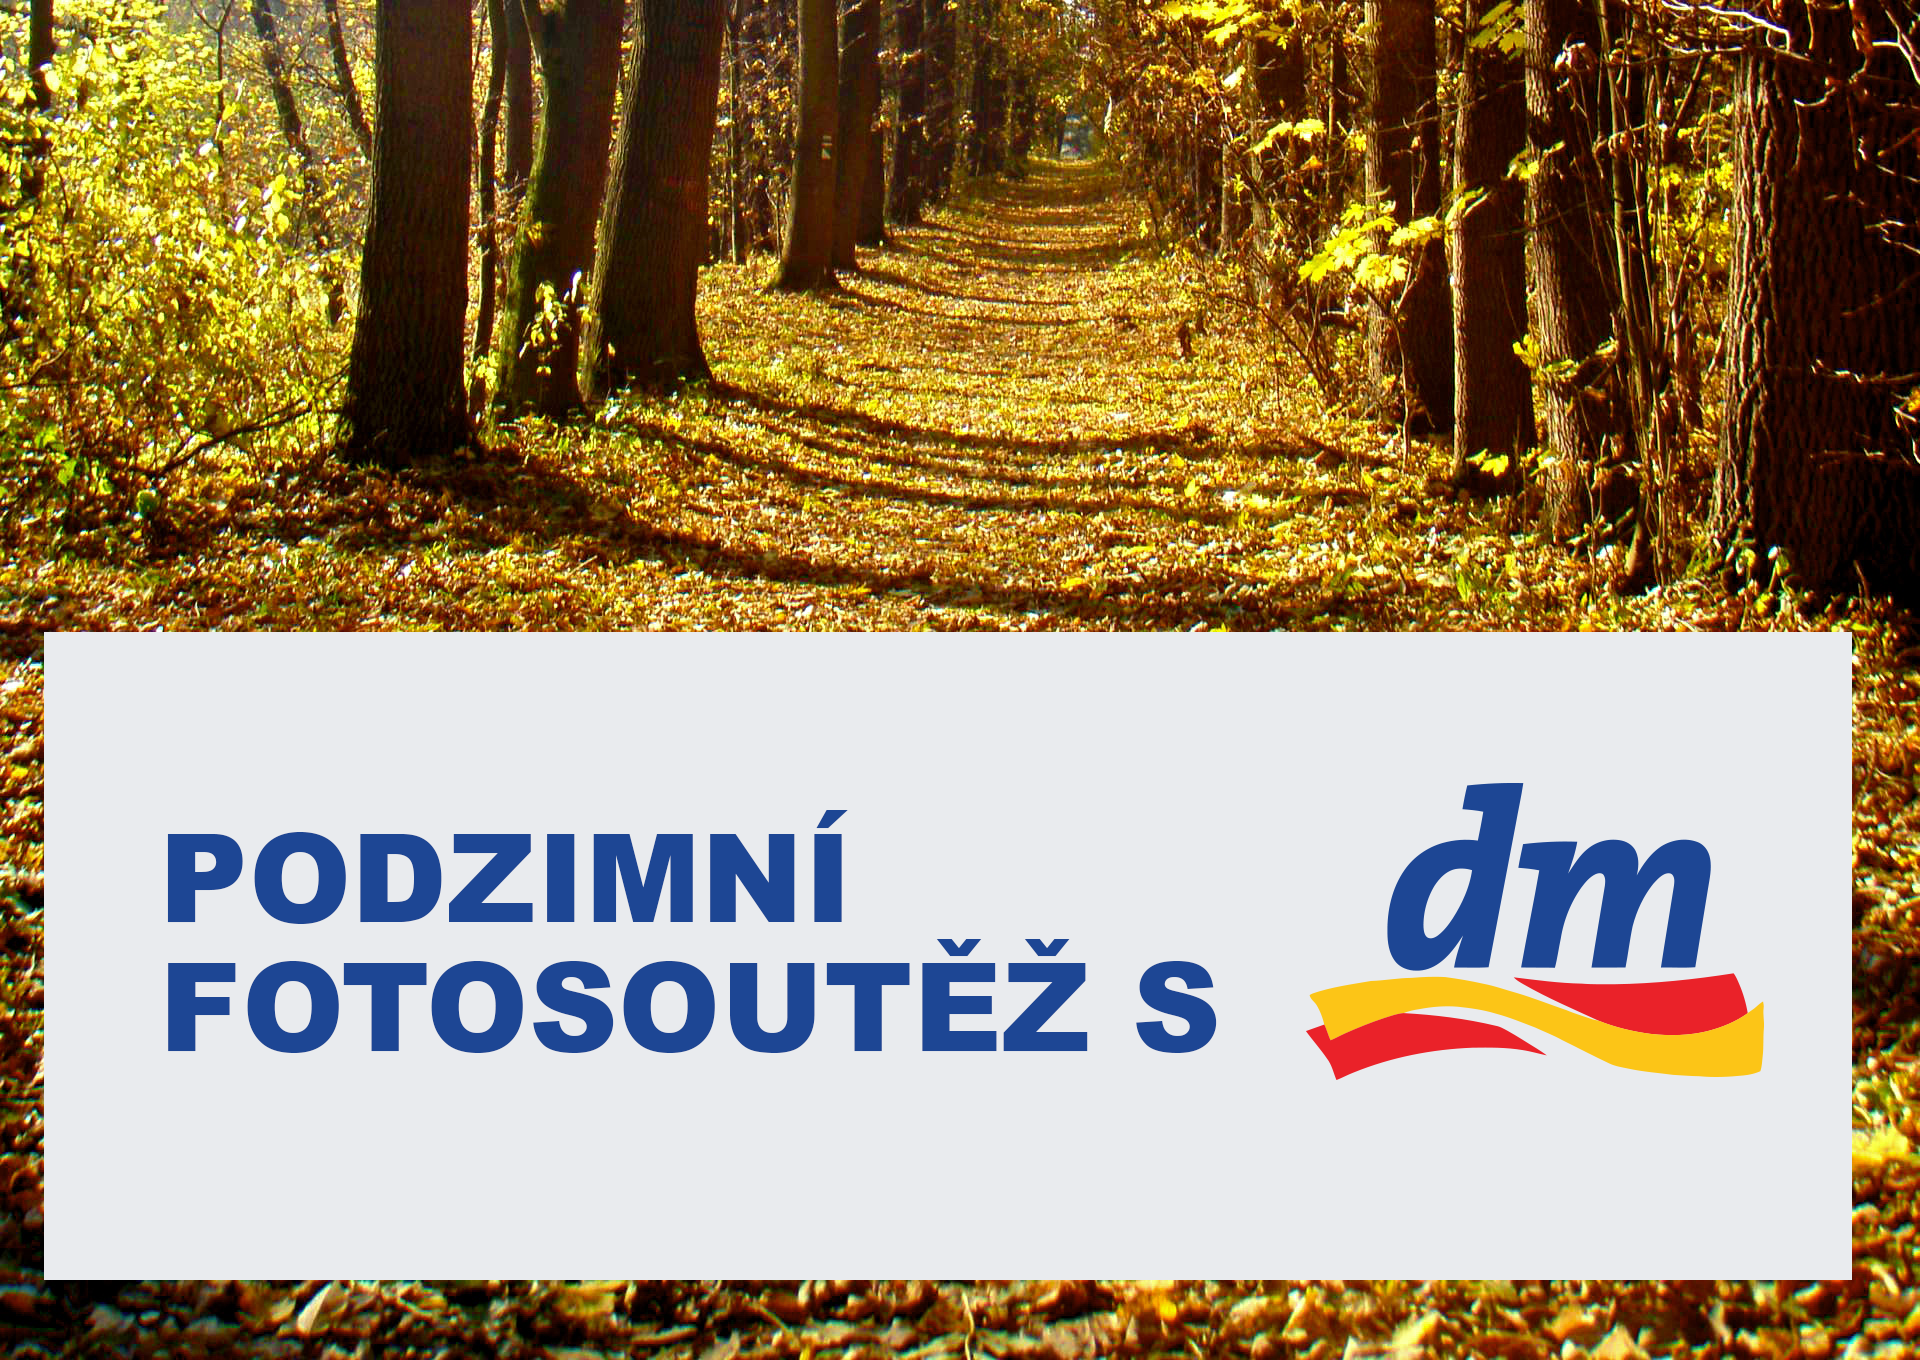 Podzimní fotosoutěž s DM